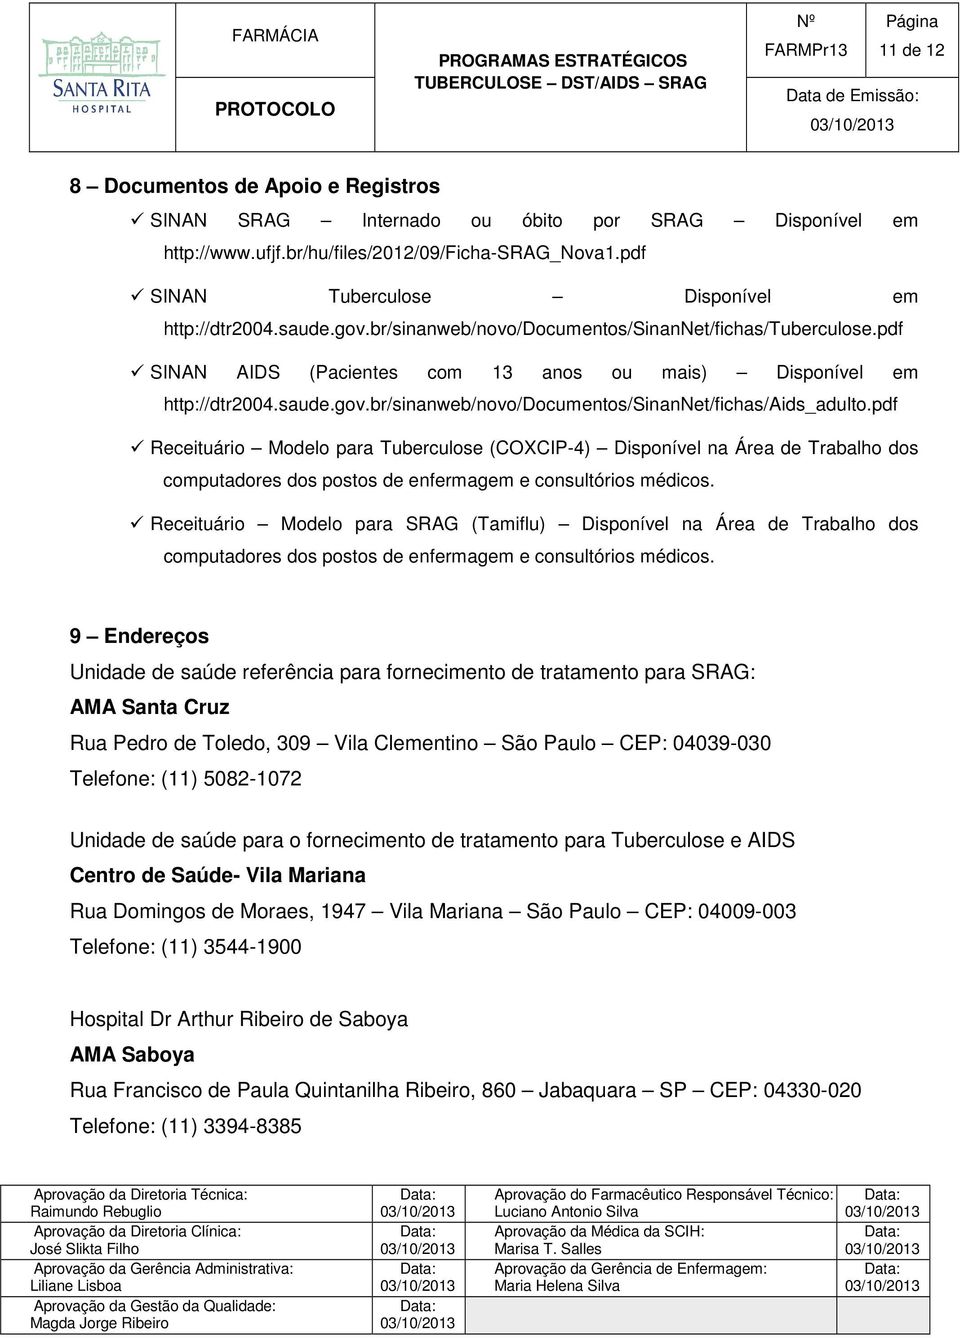 pdf Receituário Modelo para Tuberculose (COXCIP-4) Disponível na Área de Trabalho dos computadores dos postos de enfermagem e consultórios médicos.